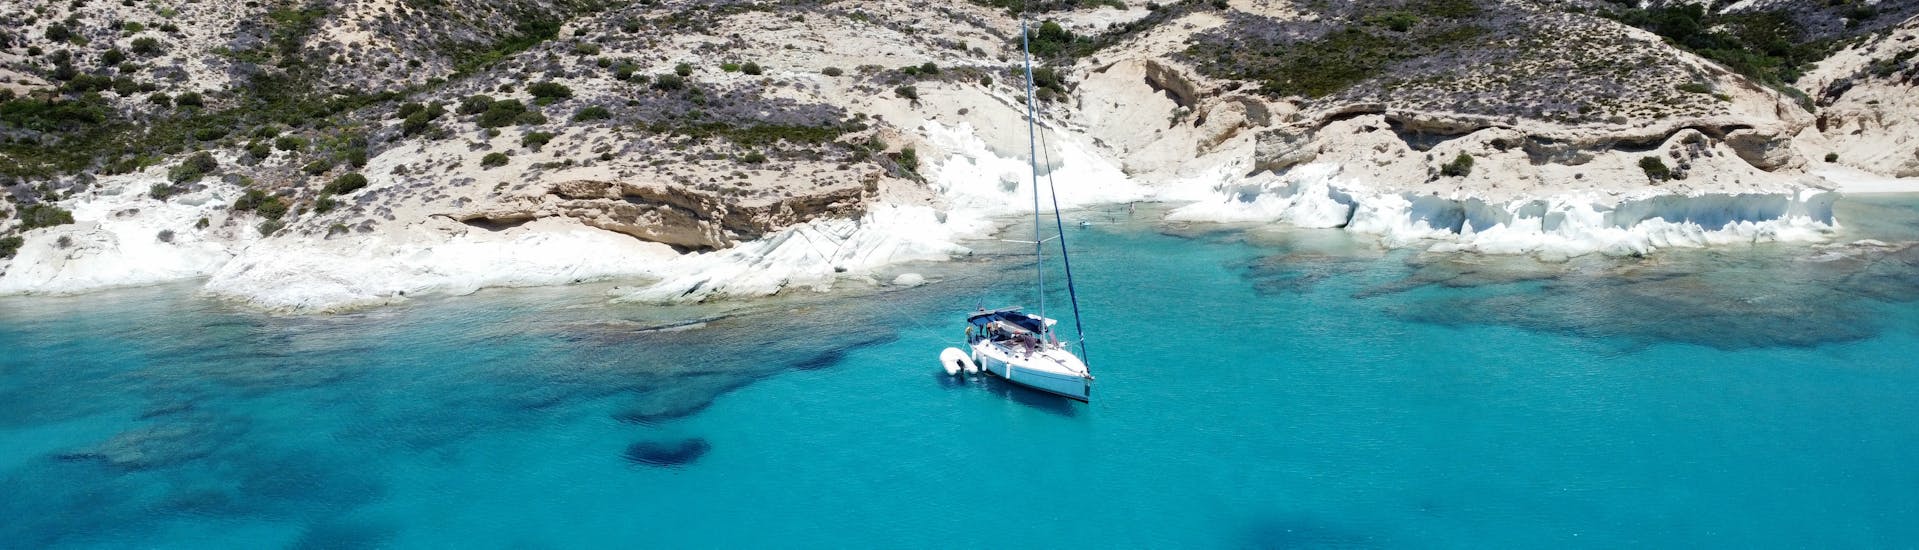 Die Küste von Milos auf der Segeltour rund um Milos nach Kleftiko mit Mittagessen & Schnorcheln mit Odysseus A Cruises Milos.